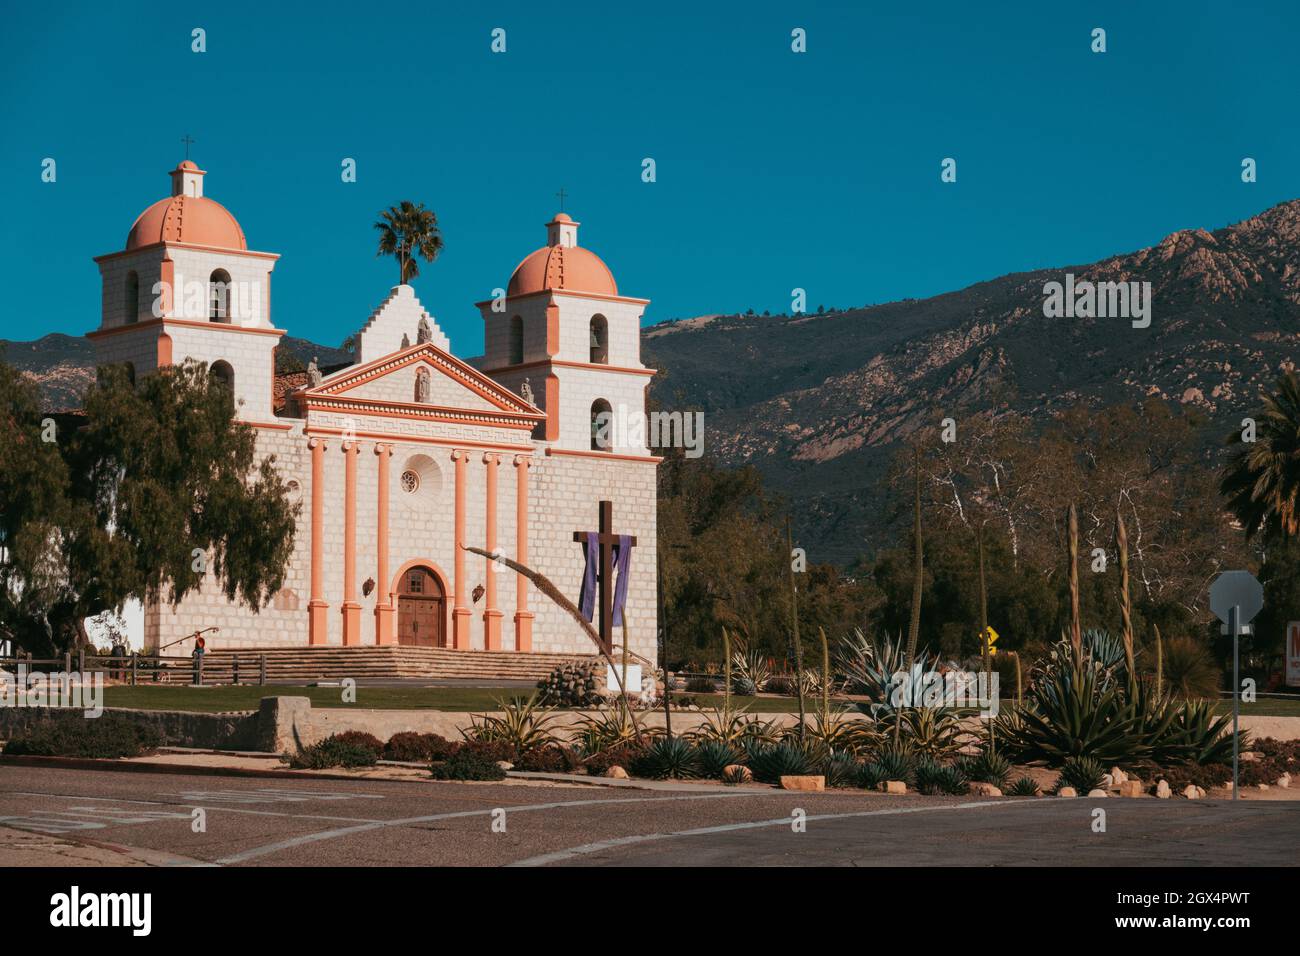 La Vecchia Missione di Santa Barbara, California. Fondata nel 1786 dagli spagnoli per la conversione religiosa dei popoli indigeni al cattolicesimo Foto Stock